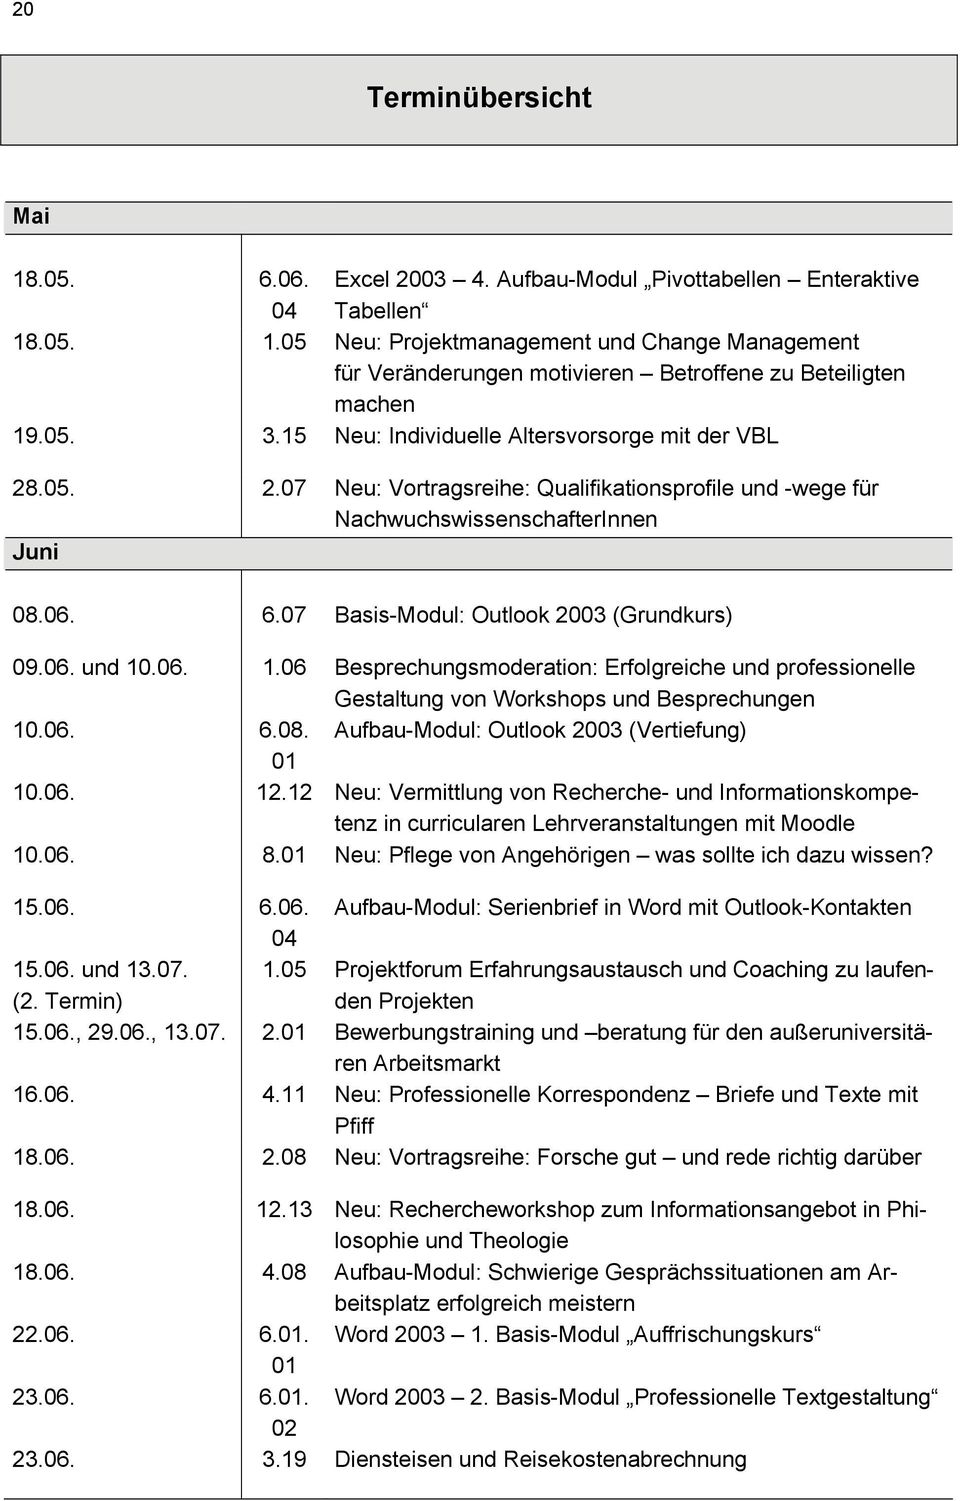 07 Basis-Modul: Outlook 2003 (Grundkurs) 09.06. und 10.06. 1.06 Besprechungsmoderation: Erfolgreiche und professionelle Gestaltung von Workshops und Besprechungen 10.06. 6.08.